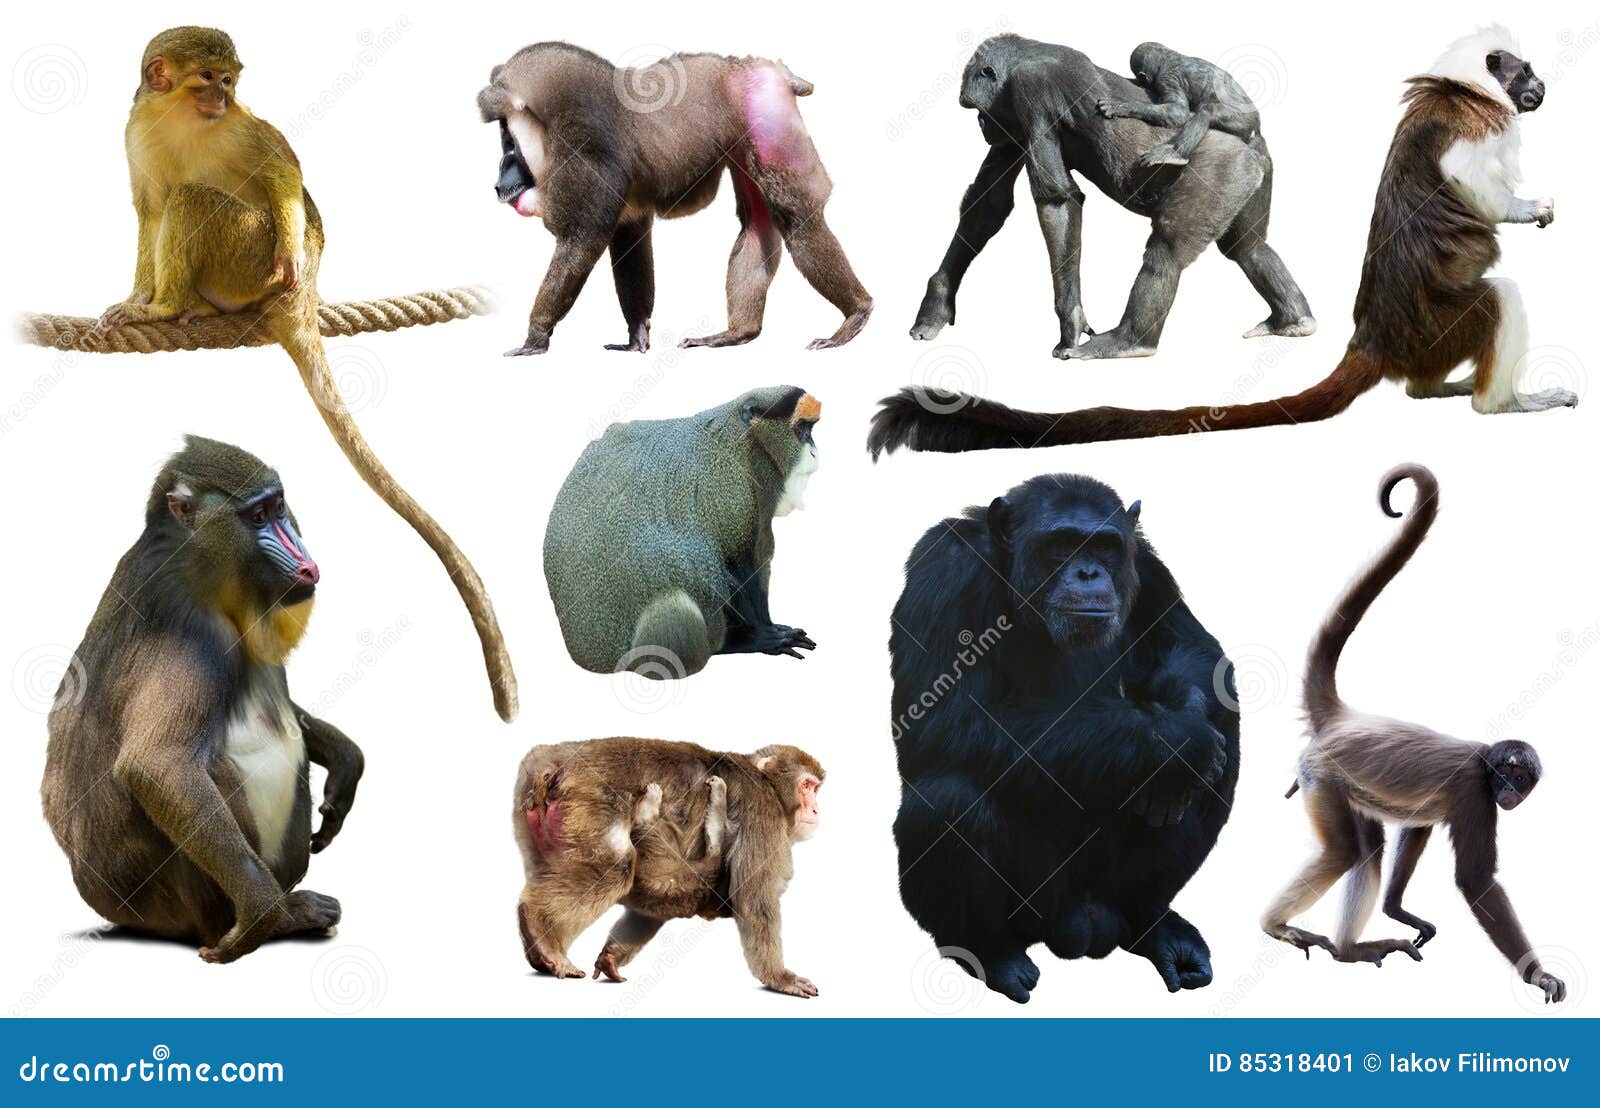 set of primates